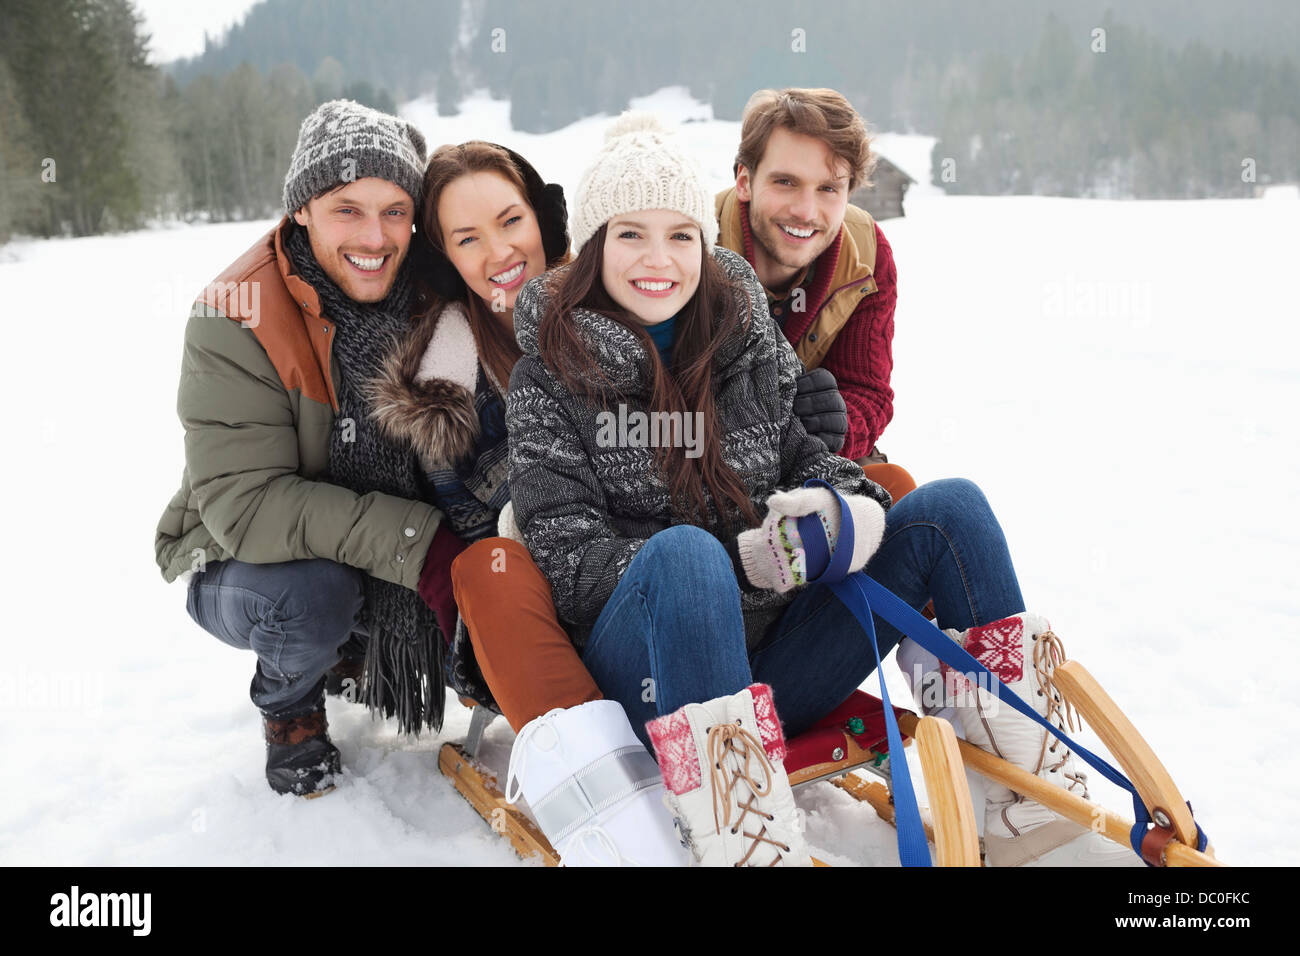 Portrait of happy friends on sled in snowy field Stock Photo